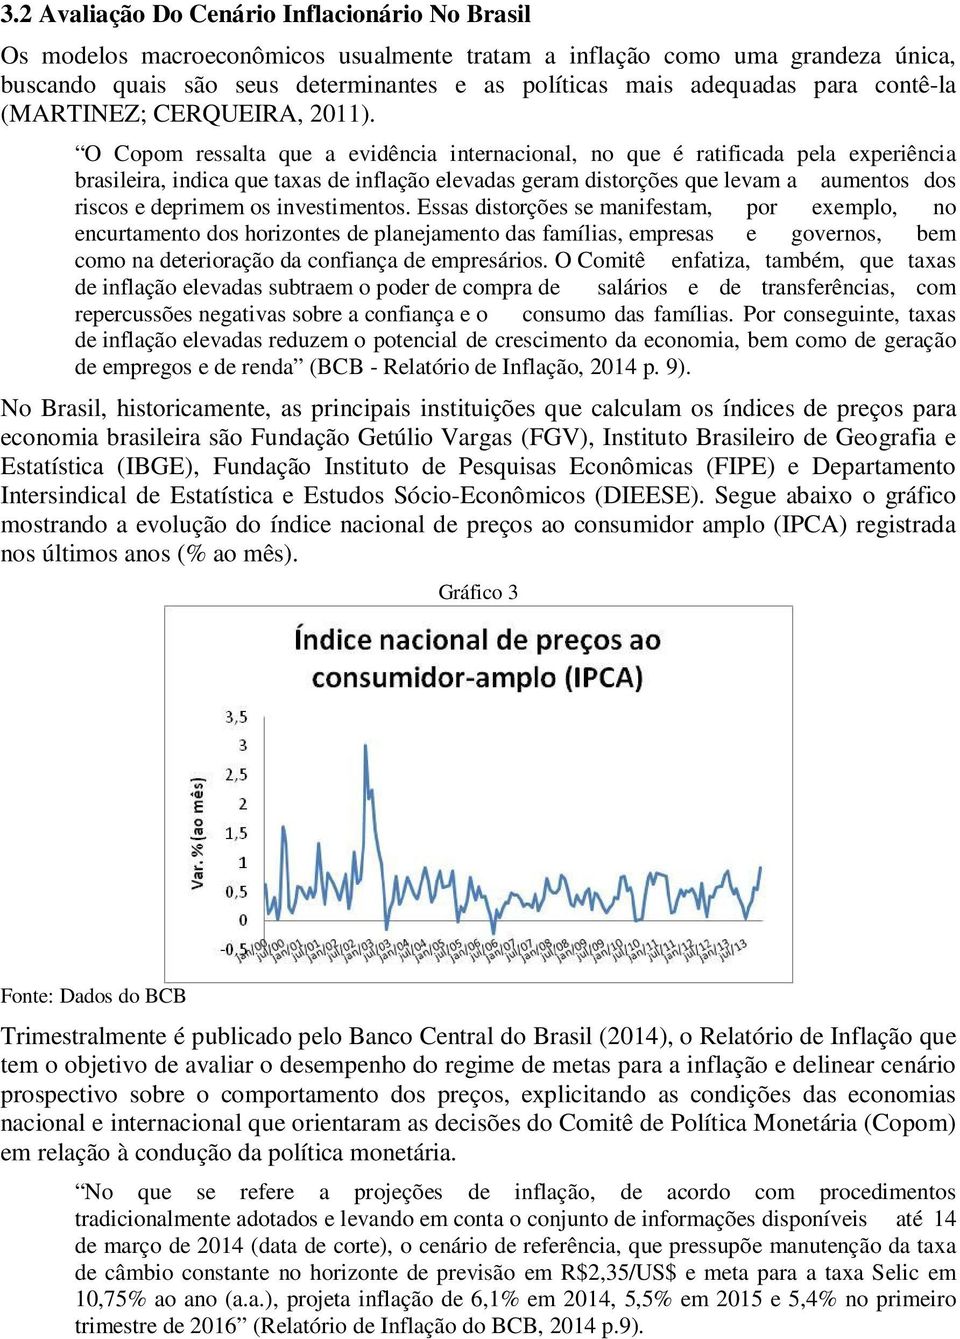 O Copom ressalta que a evidência internacional, no que é ratificada pela experiência brasileira, indica que taxas de inflação elevadas geram distorções que levam a aumentos dos riscos e deprimem os